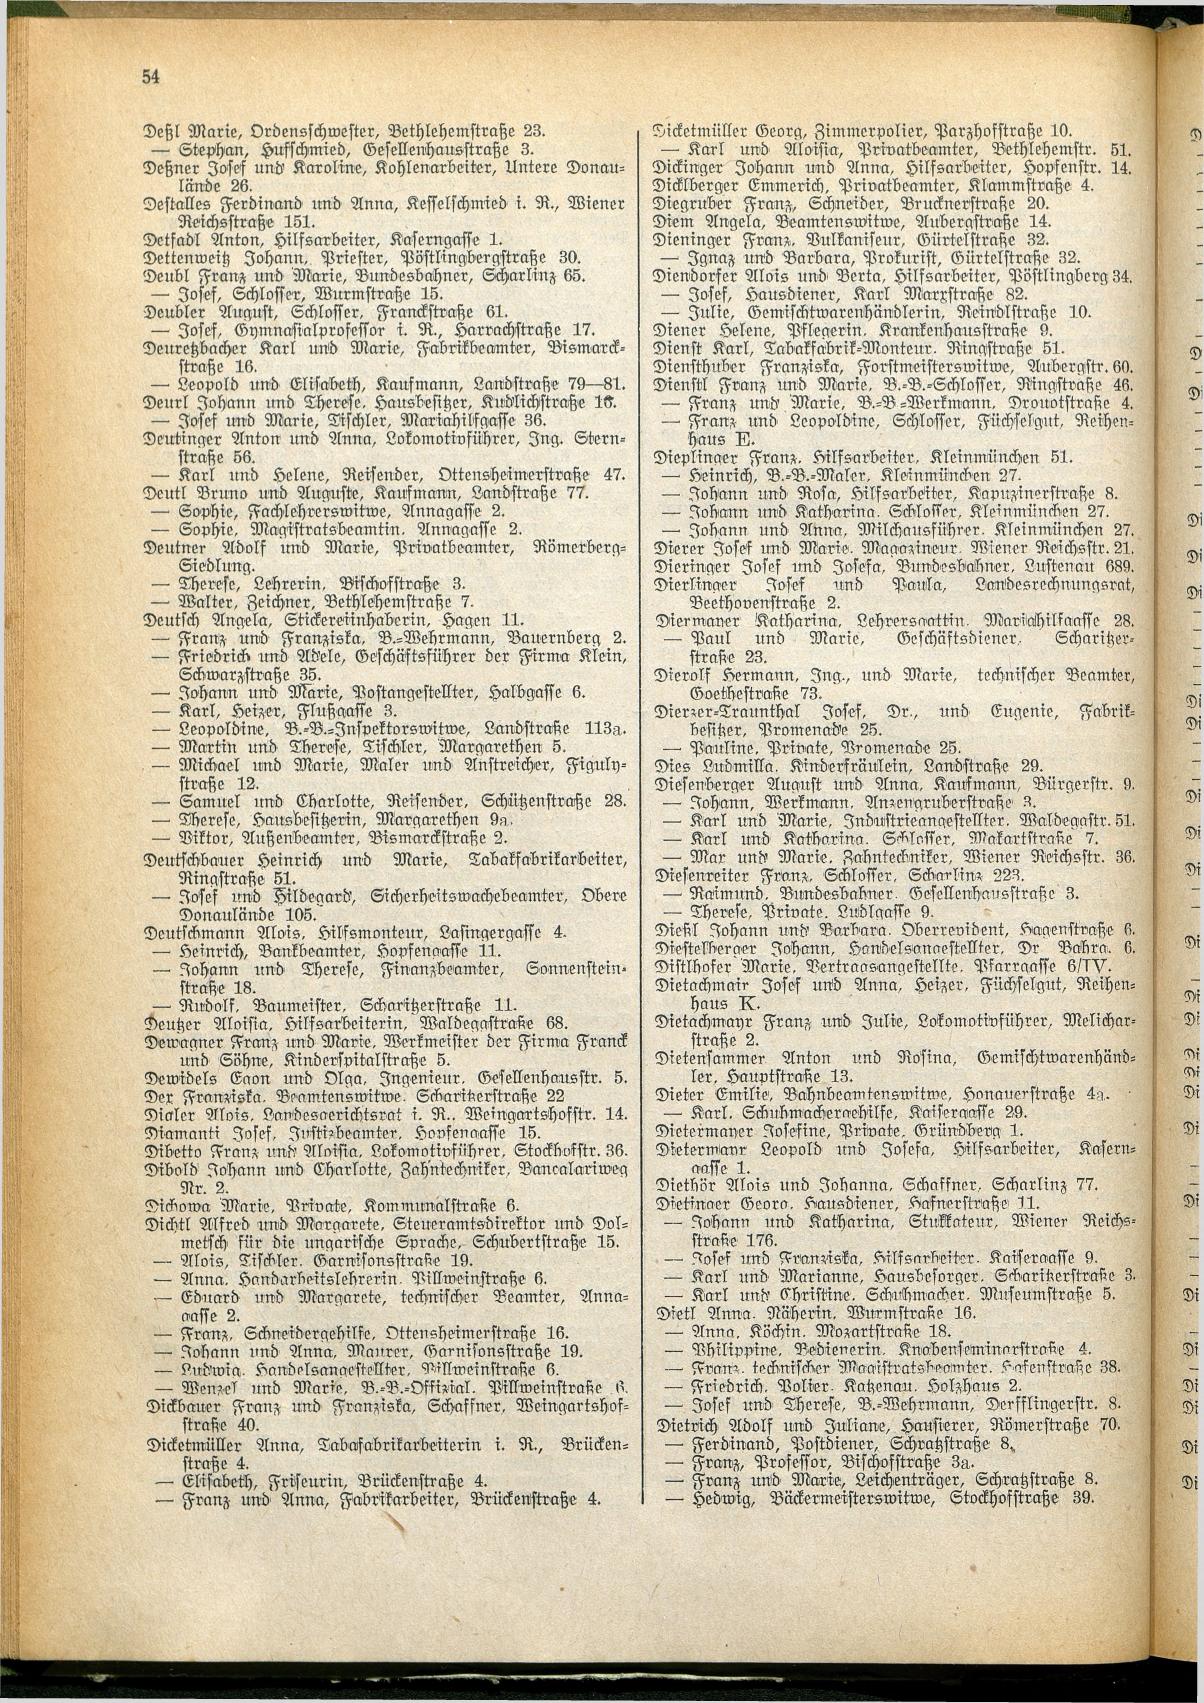 Amtliches Linzer Adreßbuch 1928 - Page 56